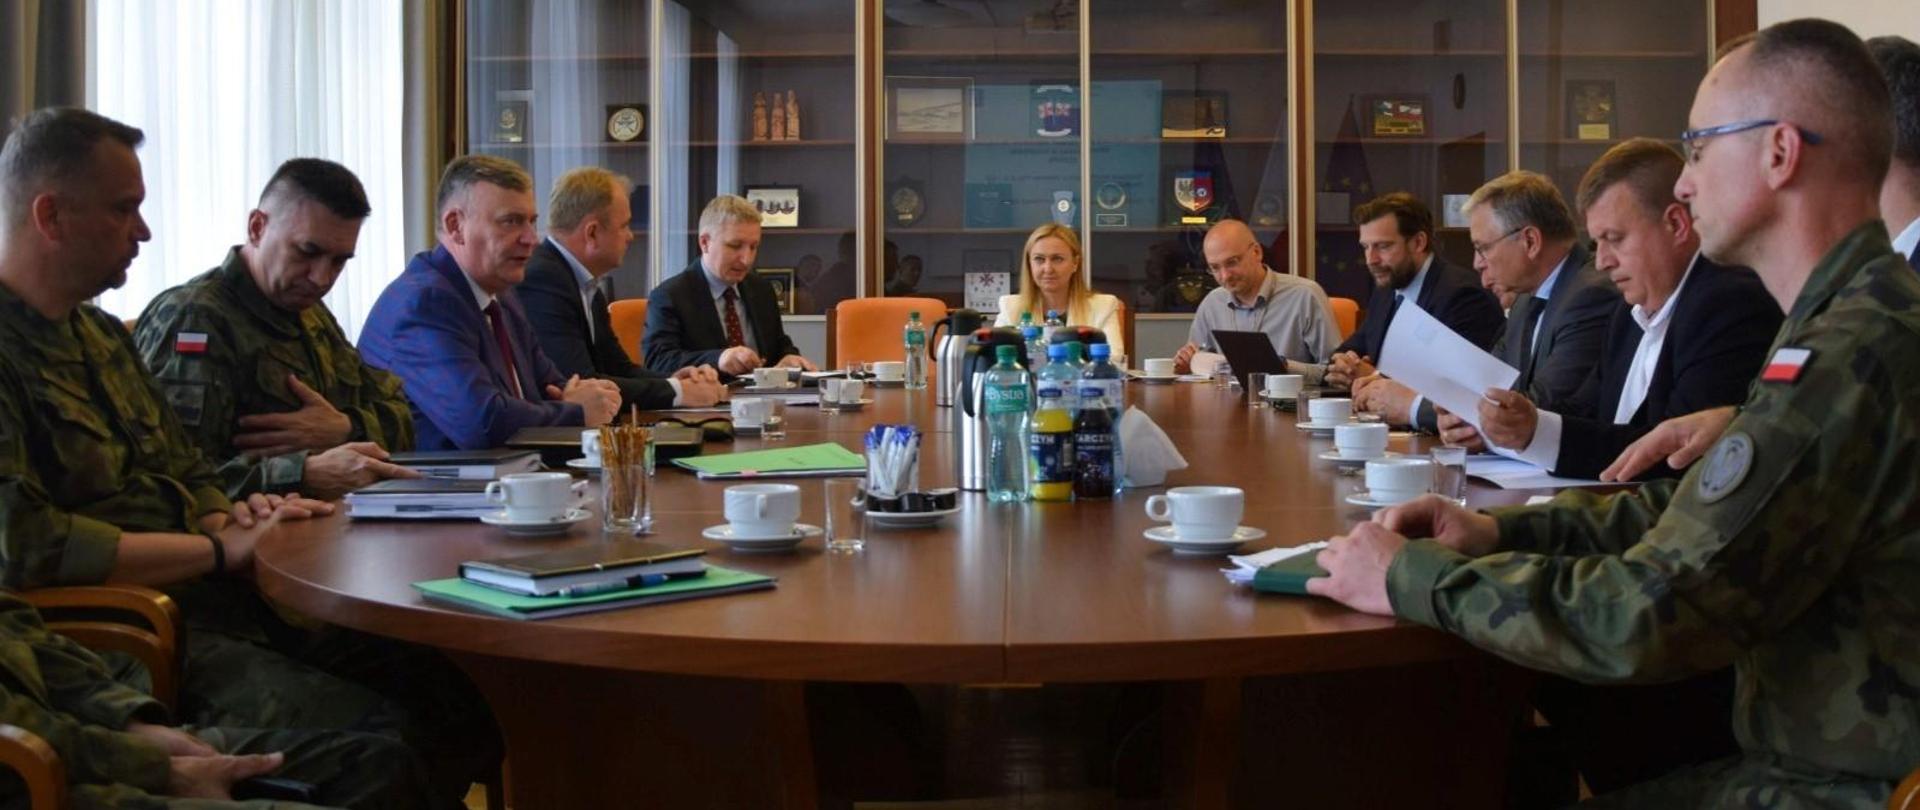 11 czerwca br. sekretarz stanu Paweł Bejda, spotkał się z przedstawicielami zarządów WB Electronics i Polskiej Grupy Zbrojeniowej. Spotkanie odbyło się w związku z wyborem produktów obu spółek do udziału w unijnym programie wspólnych zakupów wojskowych Europejskiego Programu Rozwoju Przemysłu Obronnego (EDIRPA). 